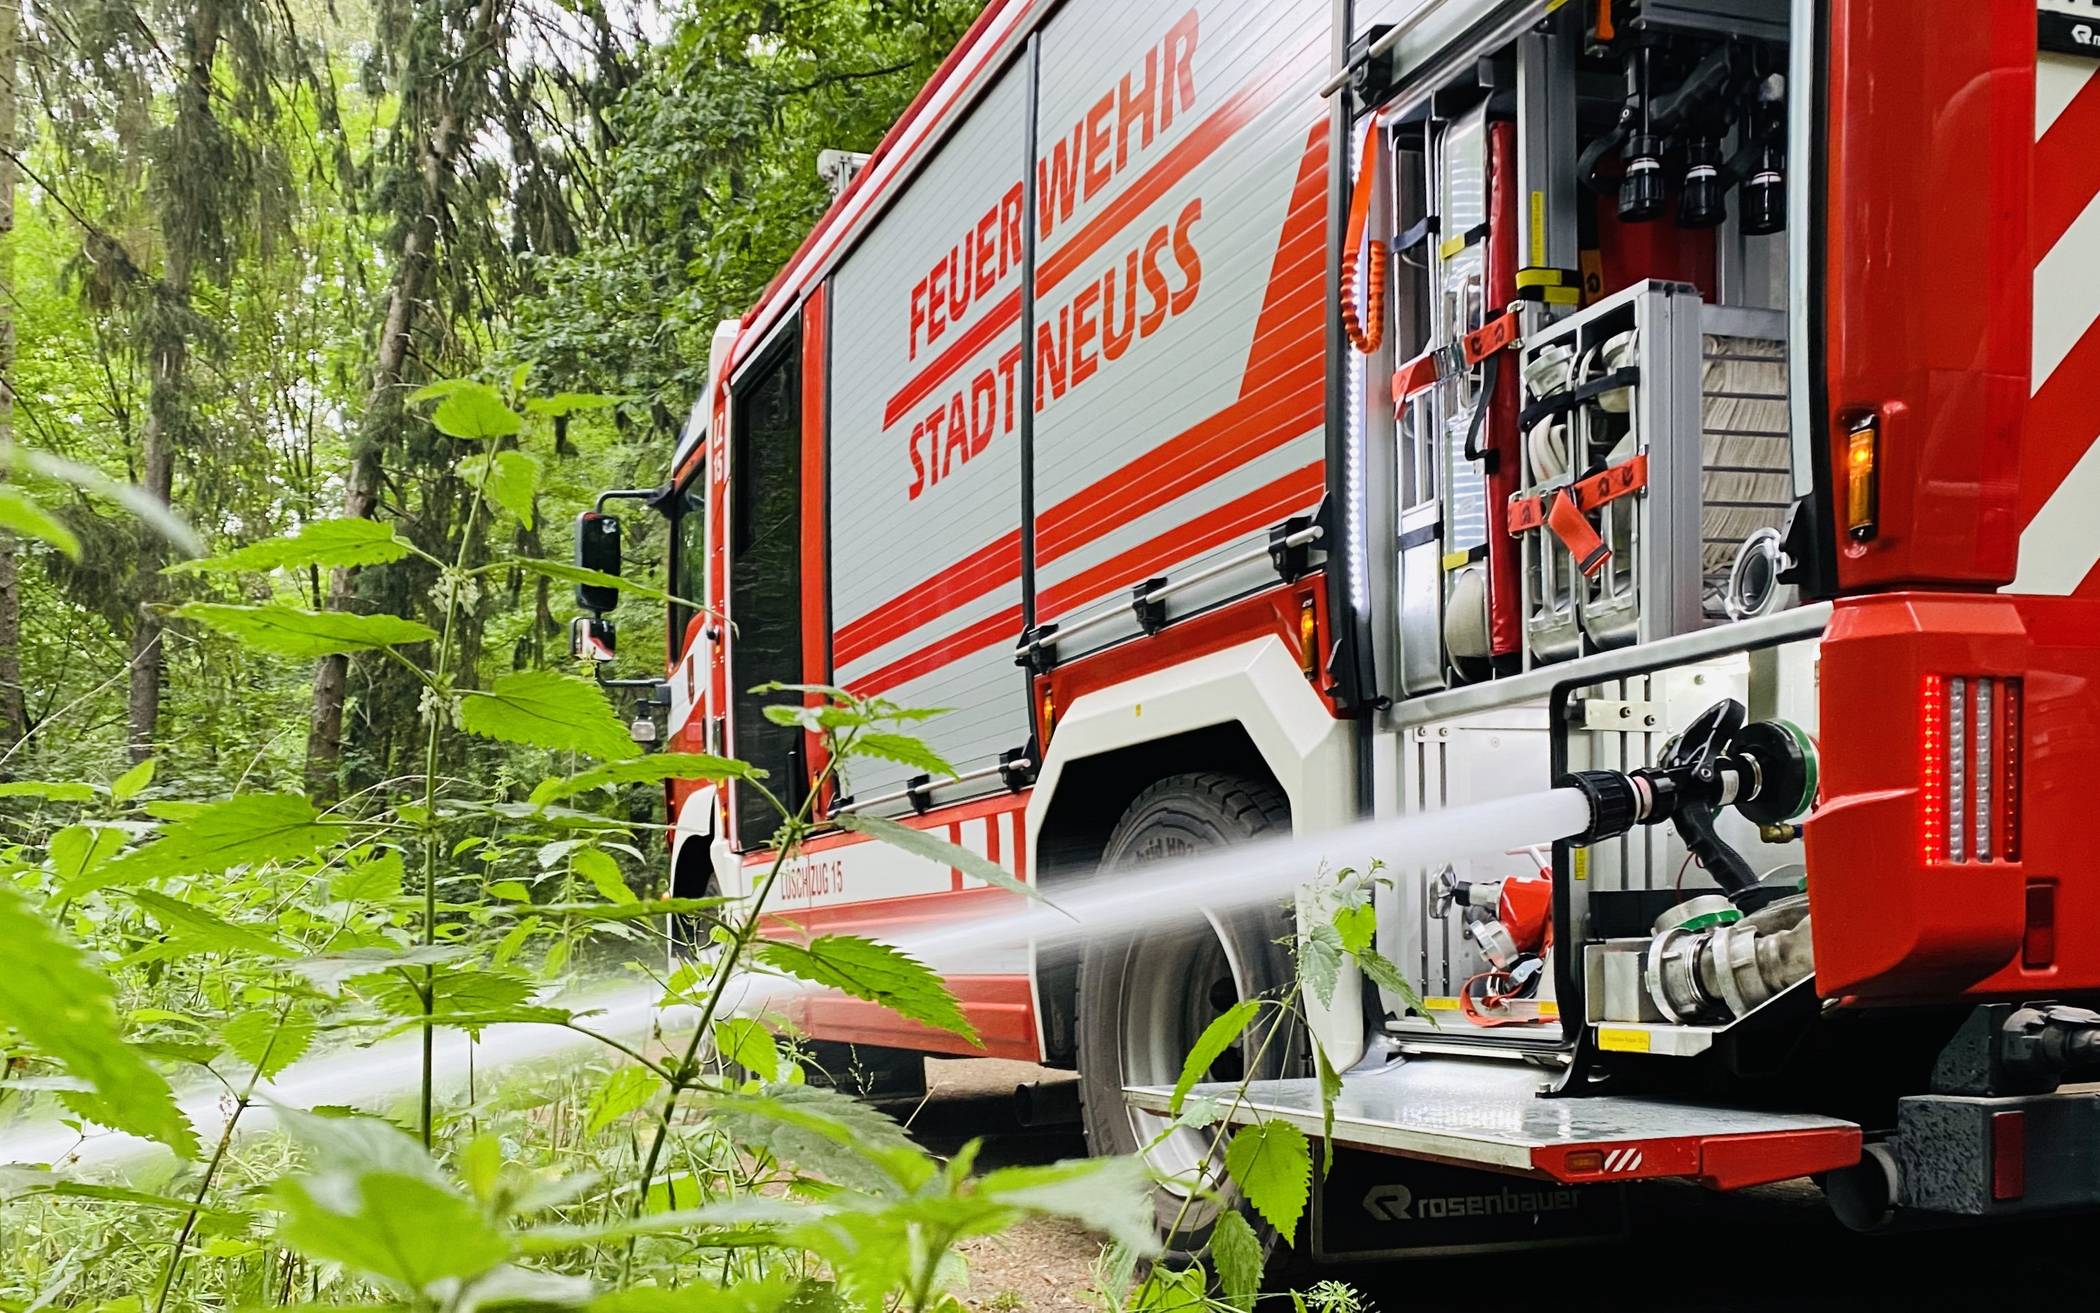  Der Deutsche Wetterdienst hatte zu Beginn dieser Woche für die Wälder im Rhein-Kreis Neuss die zweithöchste Waldbrandstufe (4) im 5-stufigen Waldbrandgefahrenindex ausgewiesen. 